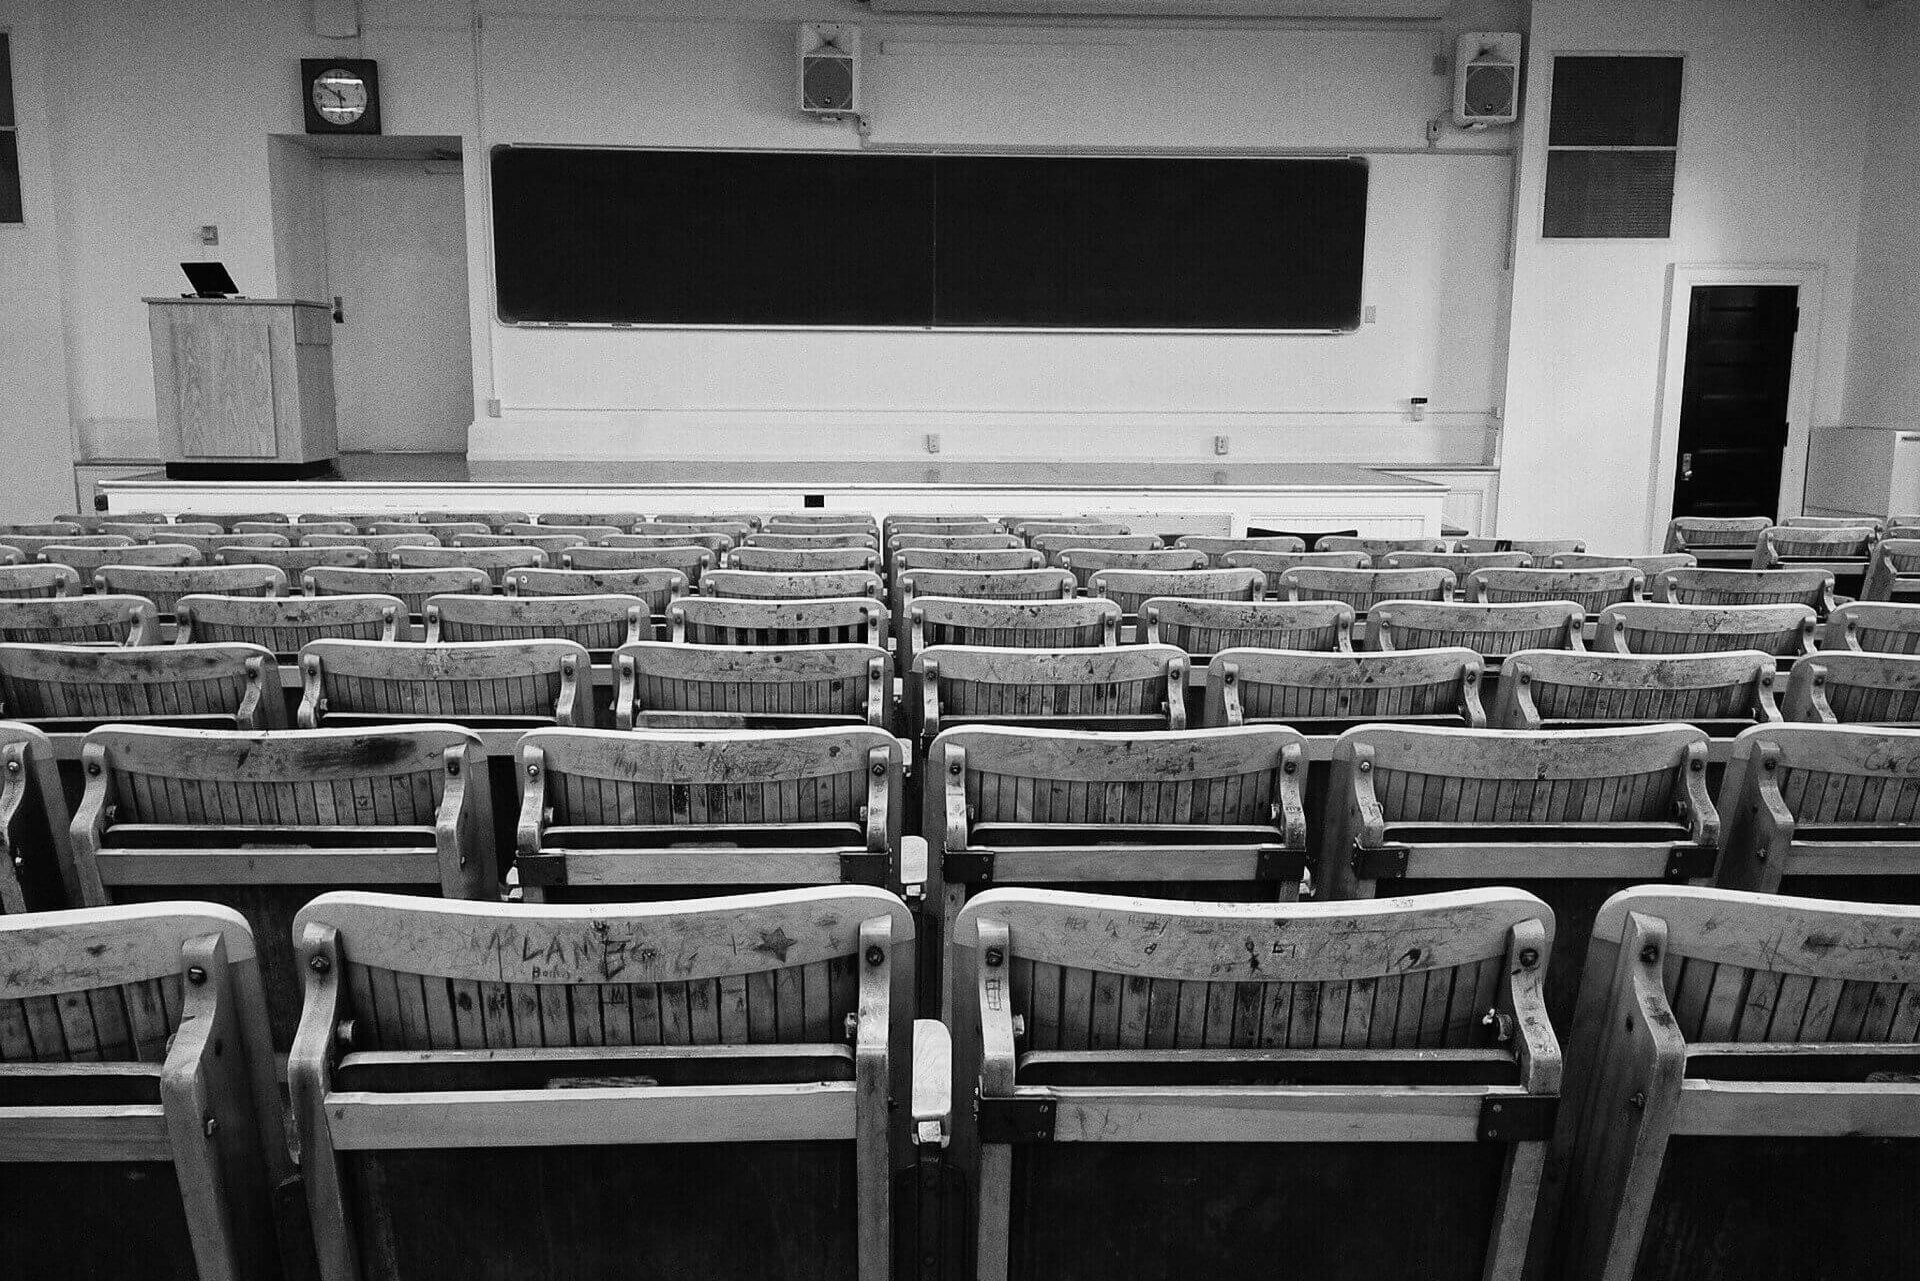 Hörsaal in dem während der Corona-Pandemie keine Vorlesungen stattfinden konnten, deswegen mussten Online-Prüfungen stattfiinden